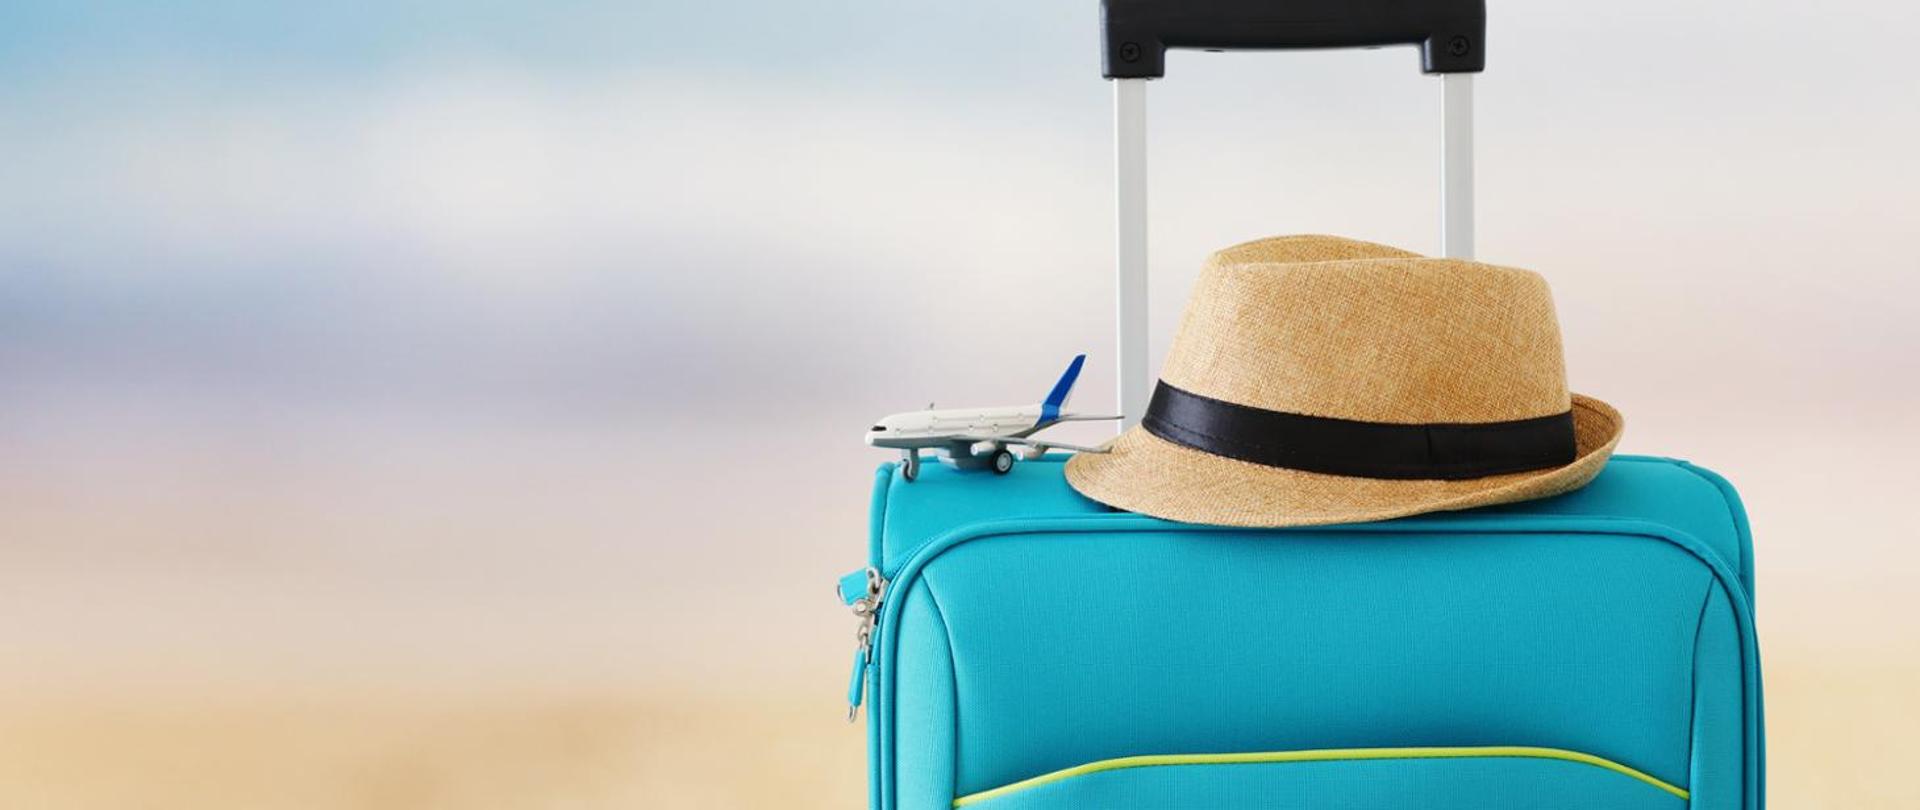 na zdjęciu widnieje torba podróżna, na niej jasny kapelusz i model samolotu pasażerskiego